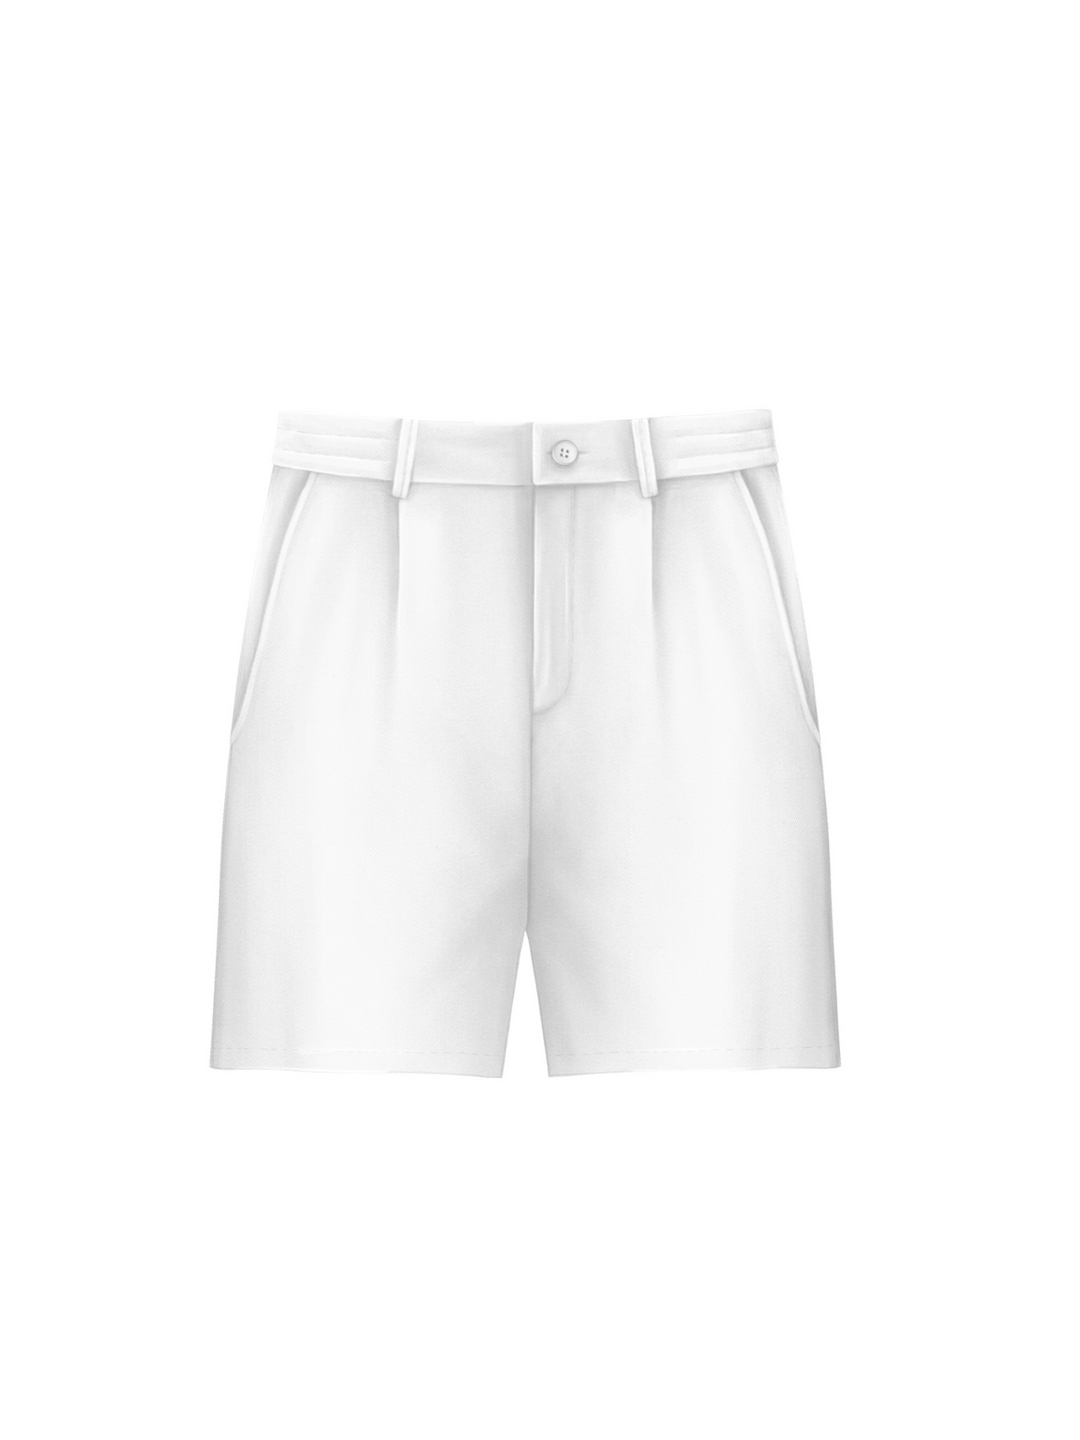 Cloth Shorts - White